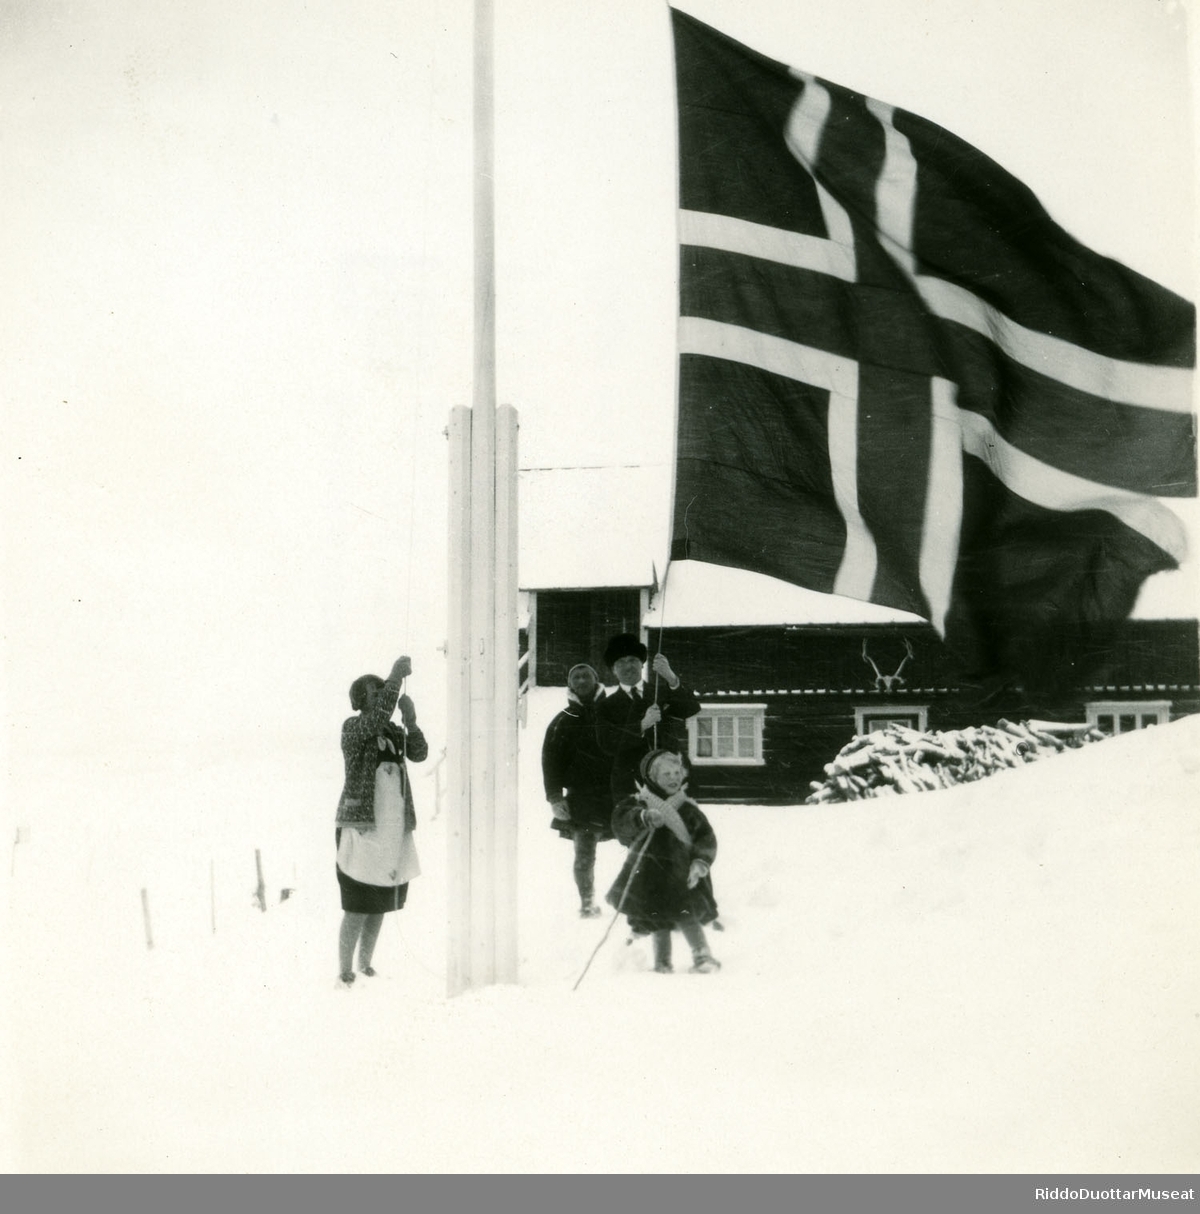 Njeallje olbmo norgga leavgga geassimen leavgastolpui.
Tre personer og en unge heiser opp det Norske flag.